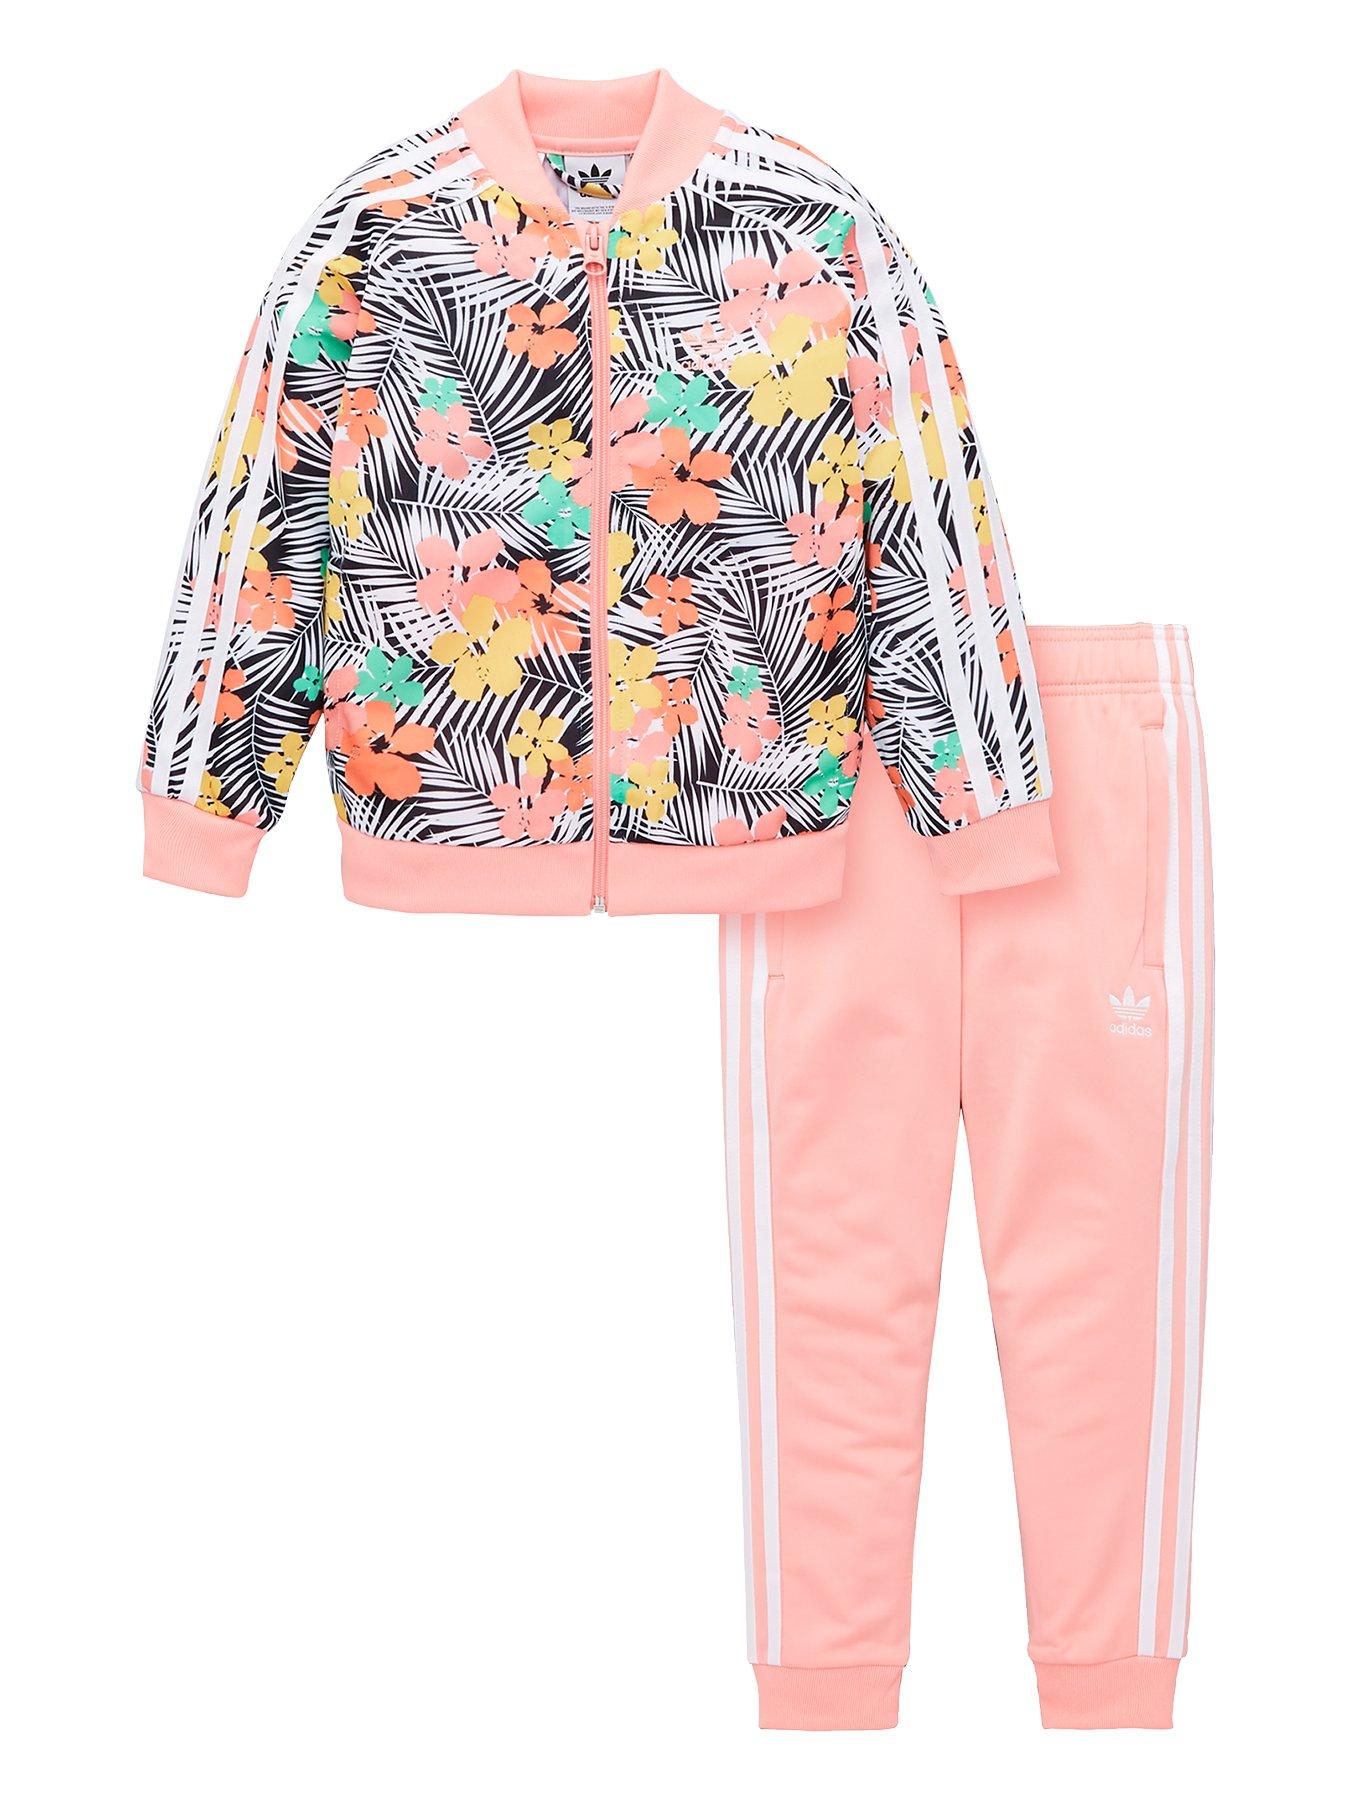 floral adidas jogging suit